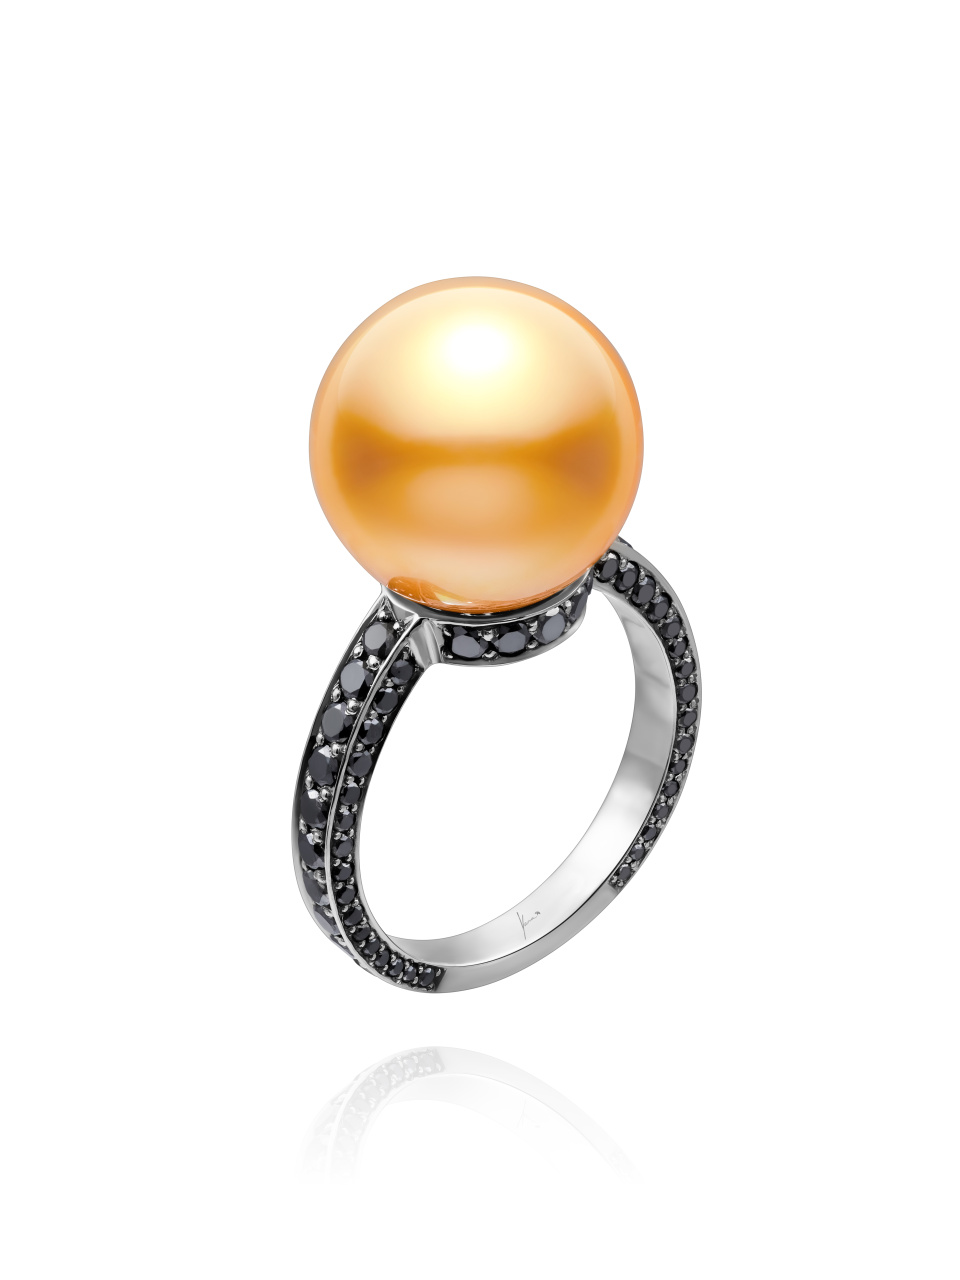 Кольцо из черненого золота с бриллиантами и жемчужиной Таити, 1